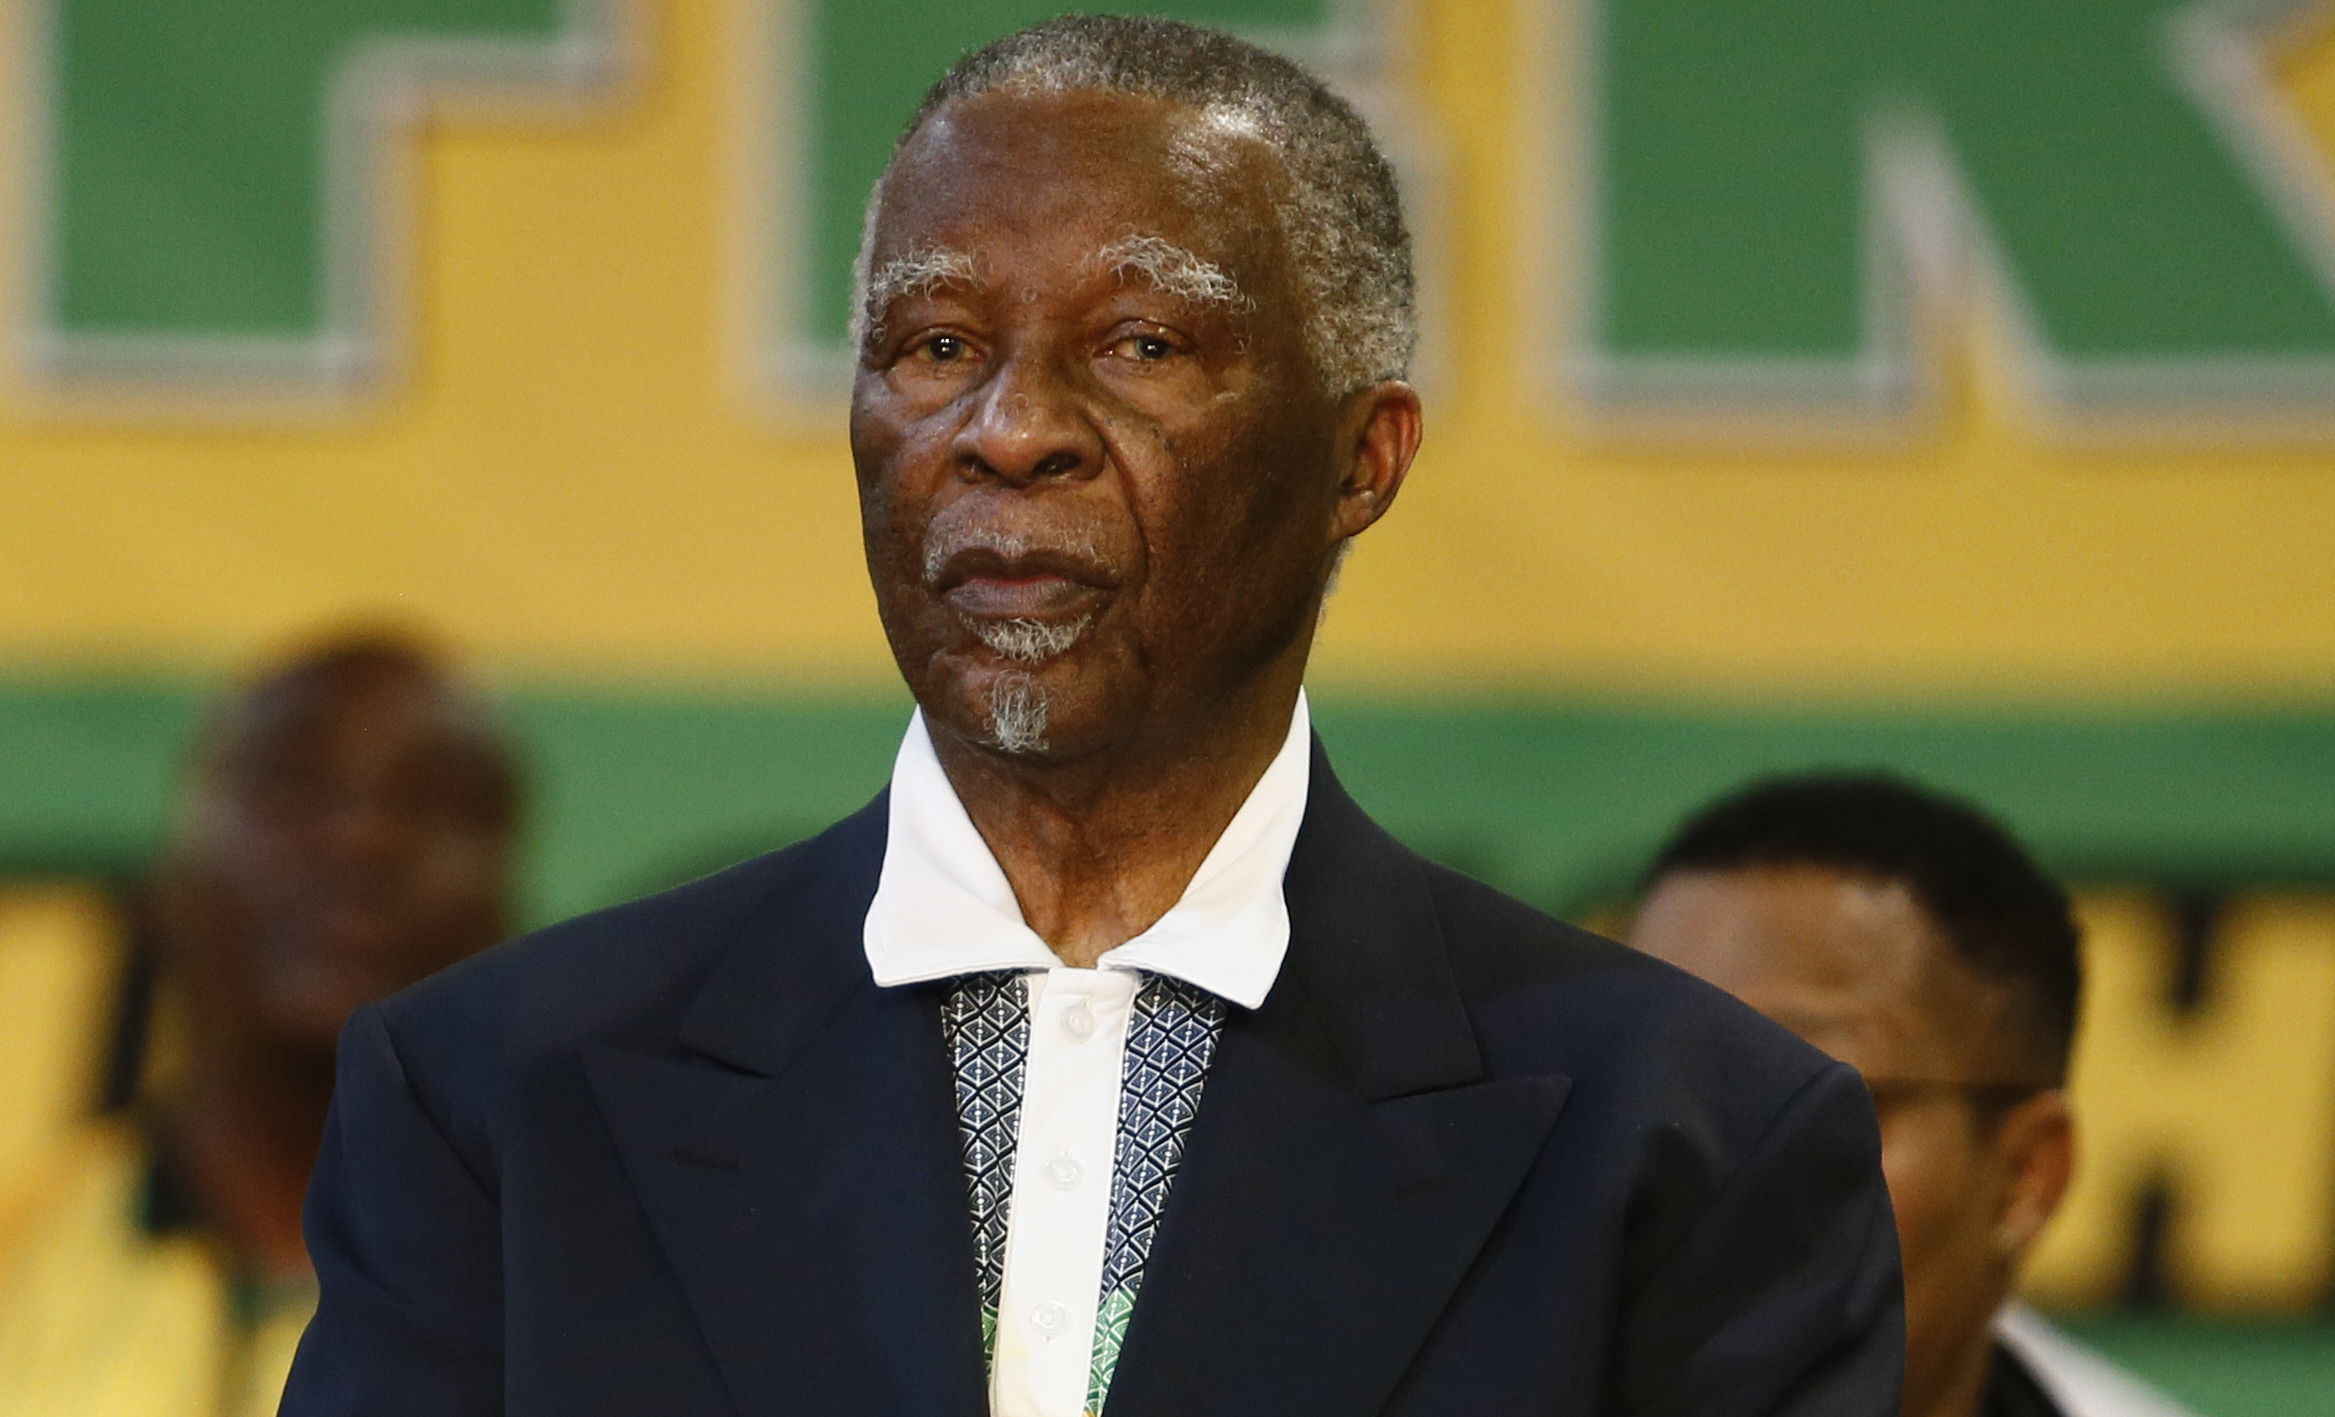 Queenin-JZ-ANC-8 O ANC espera capitalizar a popularidade de Jacob Zuma na KZN para reverter a maré política e conquistar os eleitoresO ANC em KwaZulu-Natal (KZN)